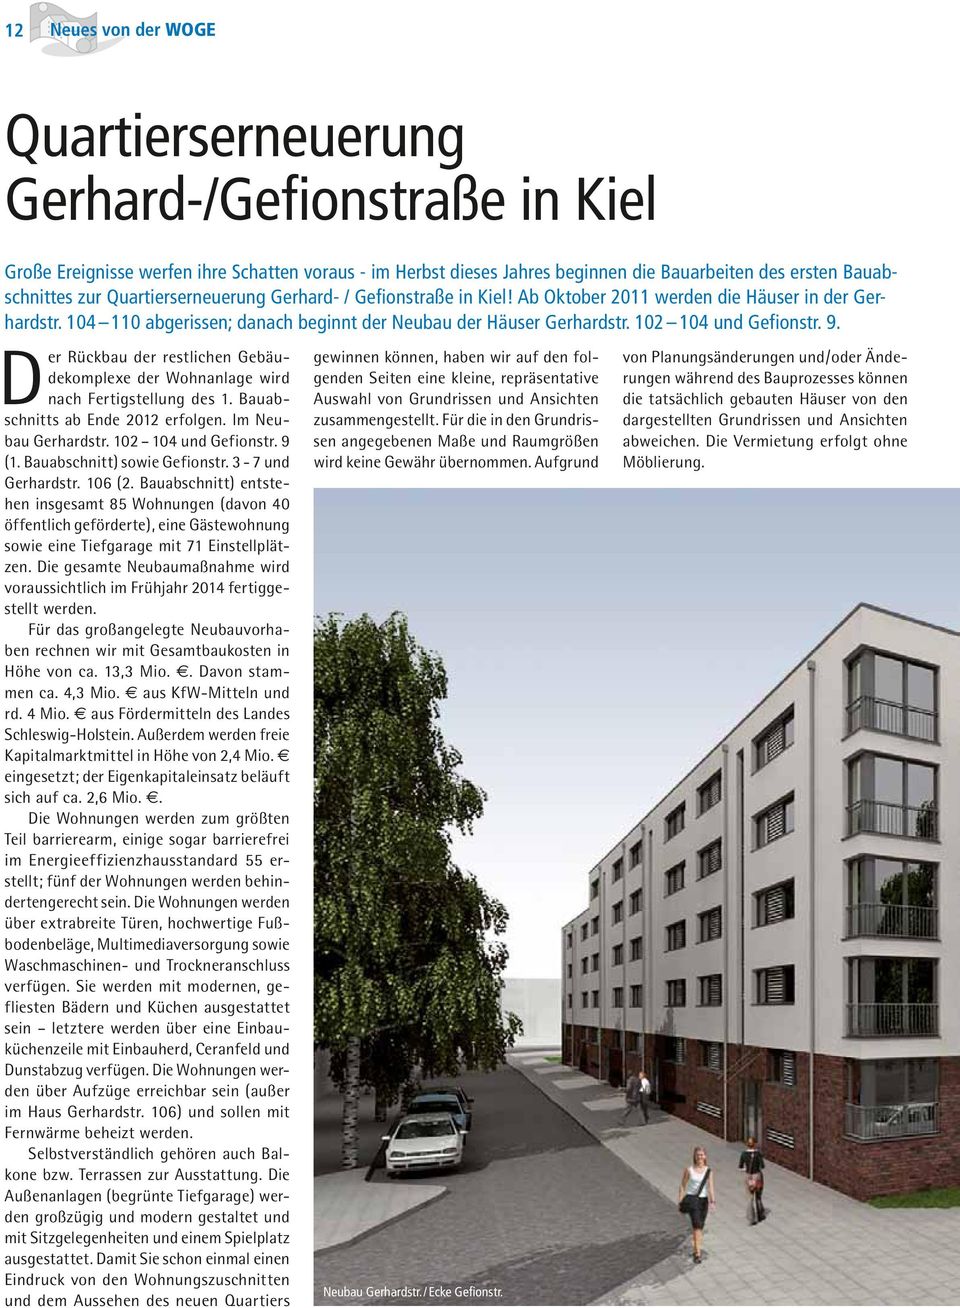 Der Rückbau der restlichen Gebäudekomplexe der Wohnanlage wird nach Fertigstellung des 1. Bauabschnitts ab Ende 2012 erfolgen. Im Neubau Gerhardstr. 102 104 und Gefionstr. 9 (1.